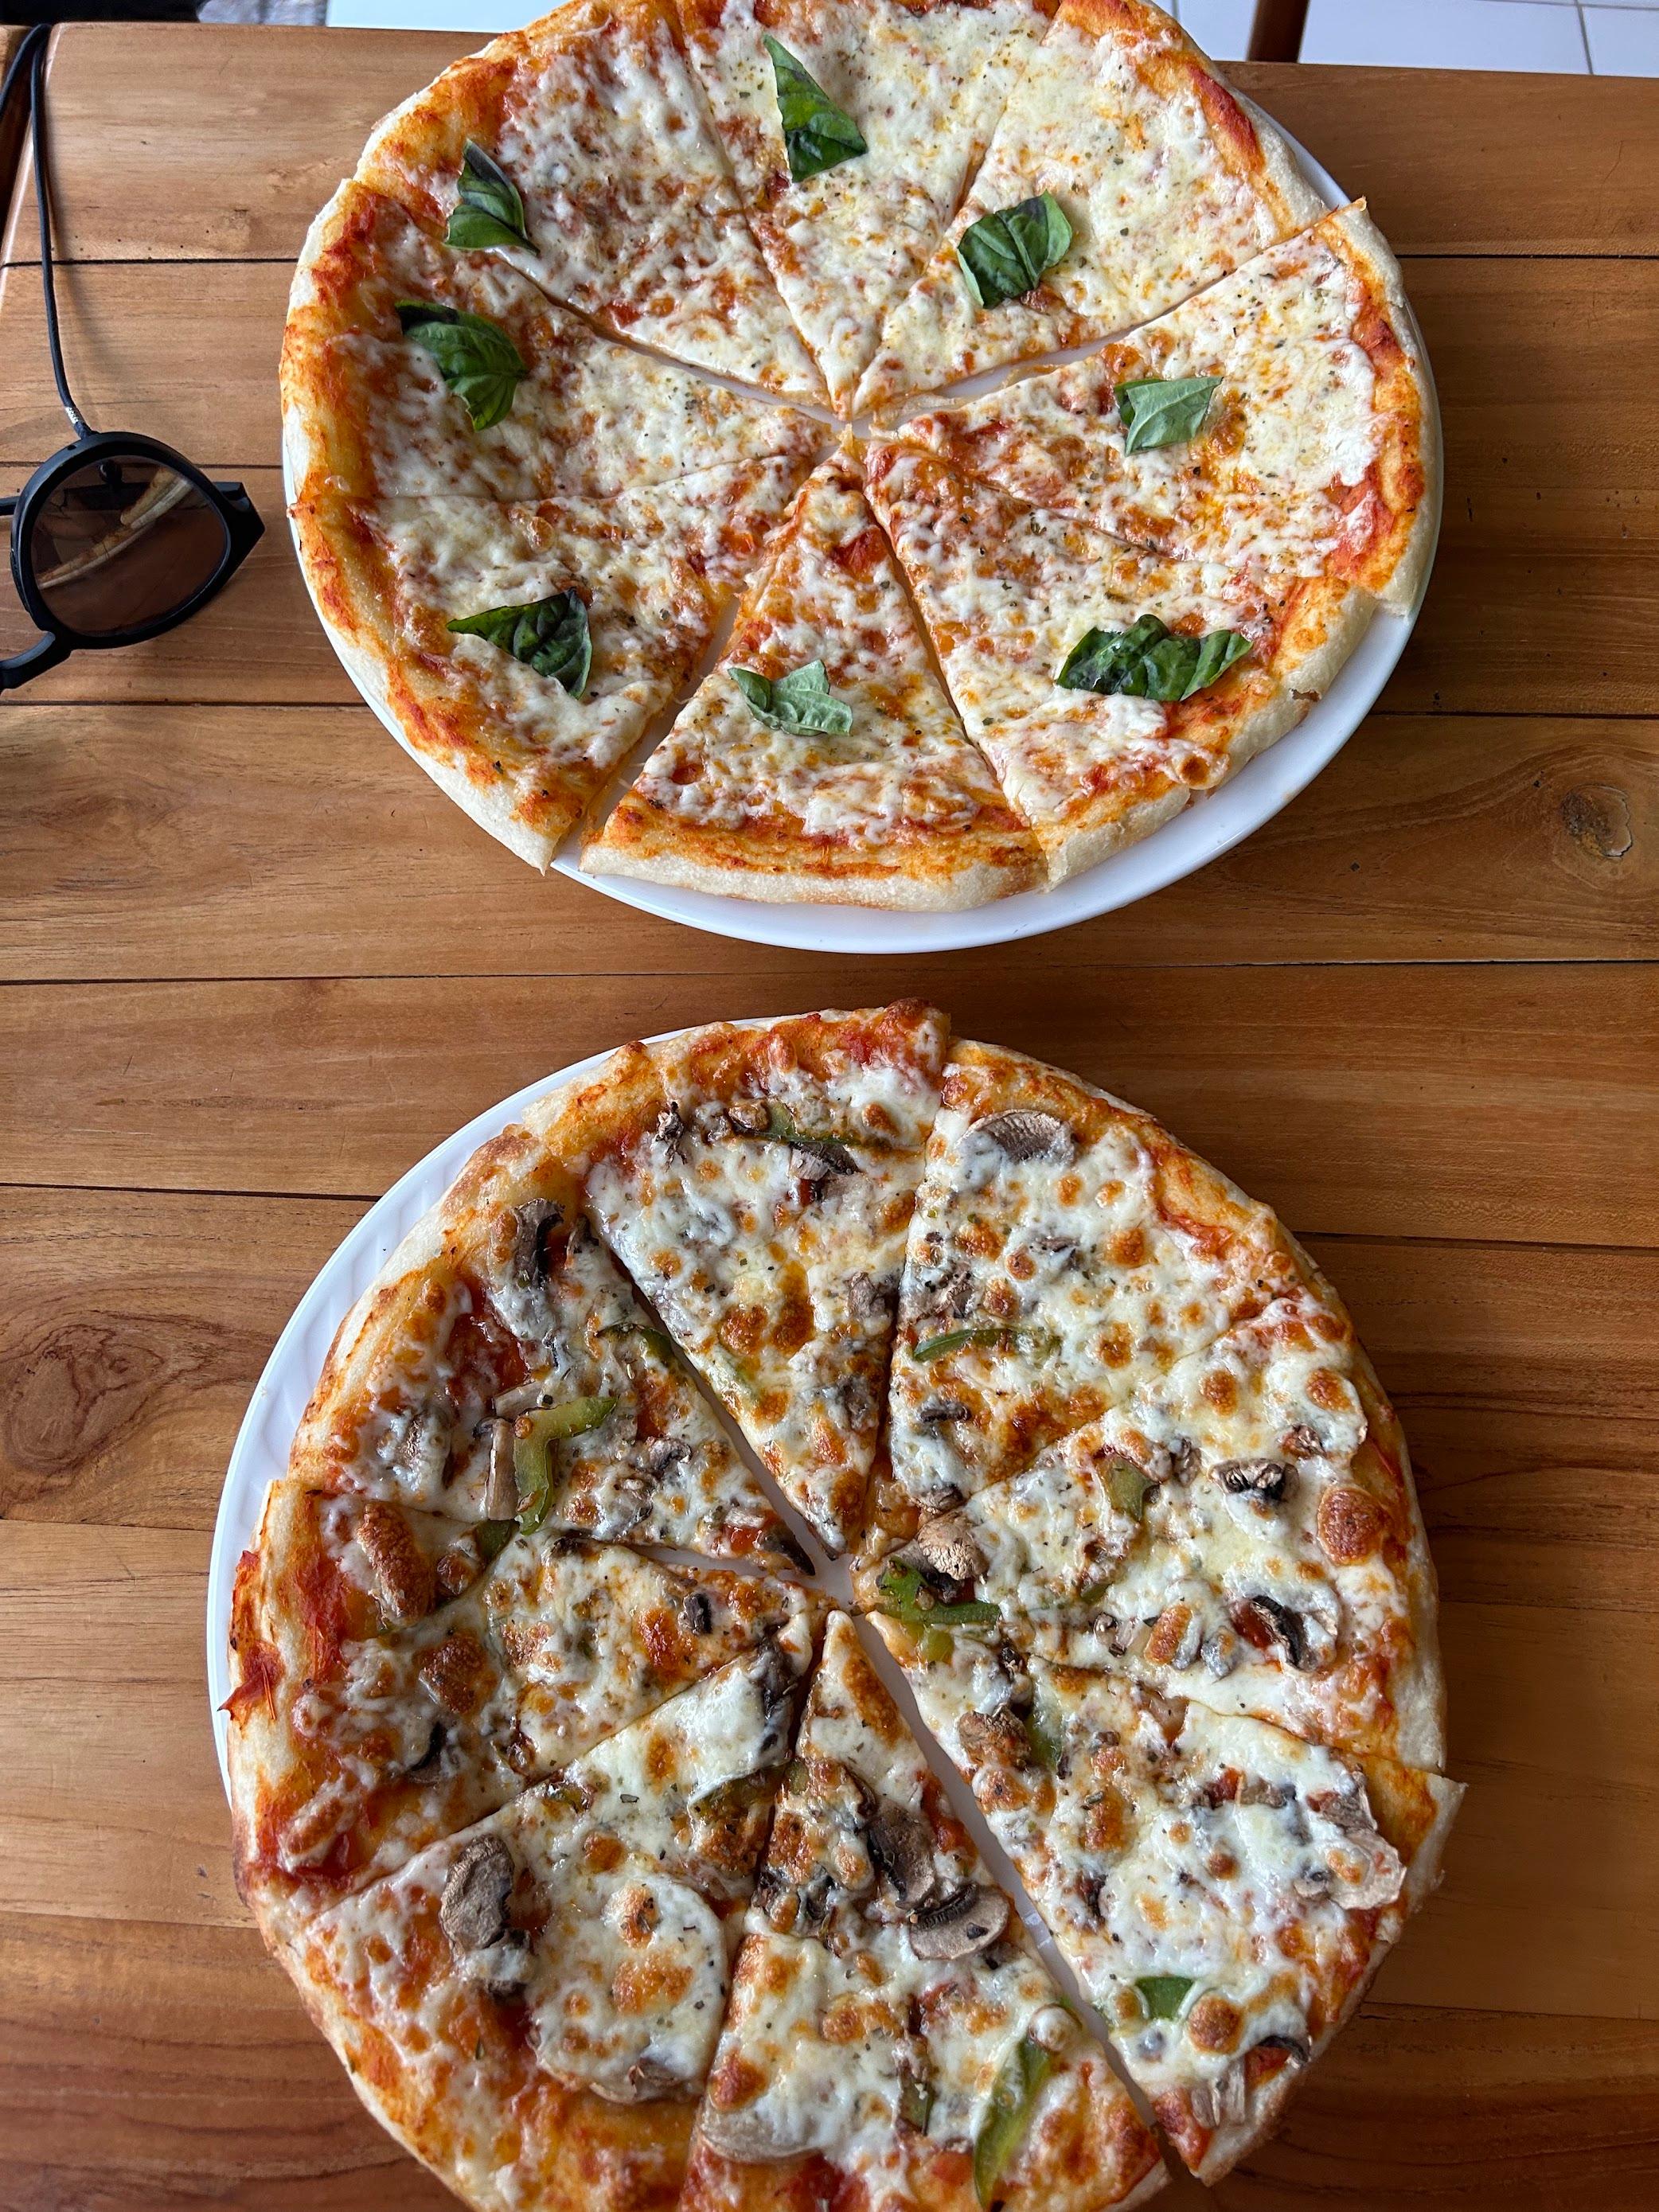 Pesona Pizza Warung review